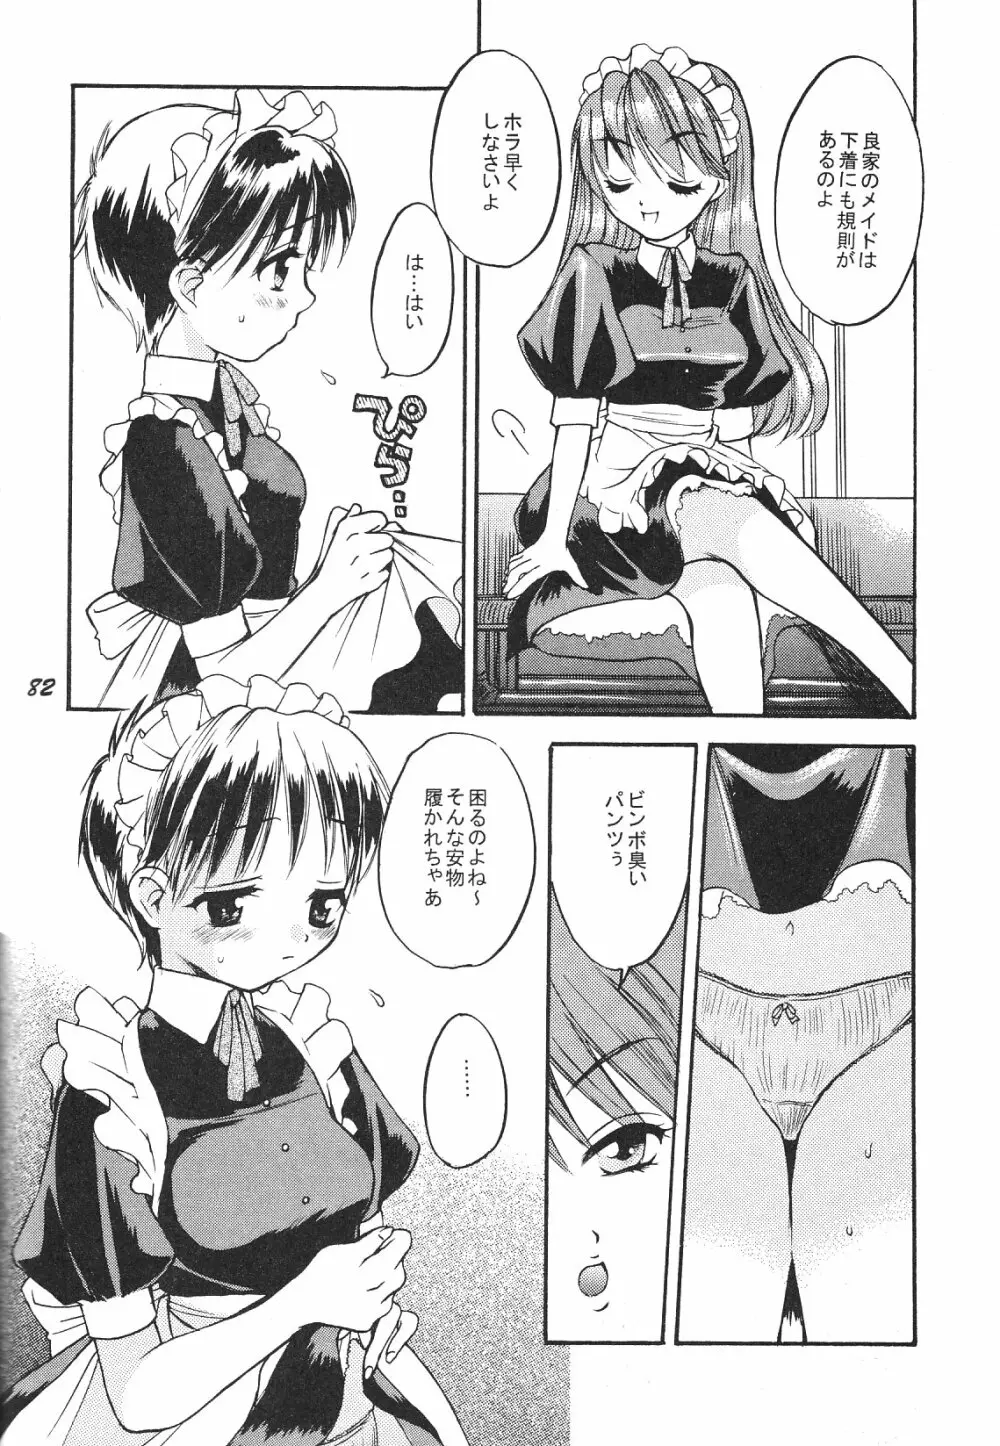 Maniac Juice 女シンジ再録集 '96-'99 - page82